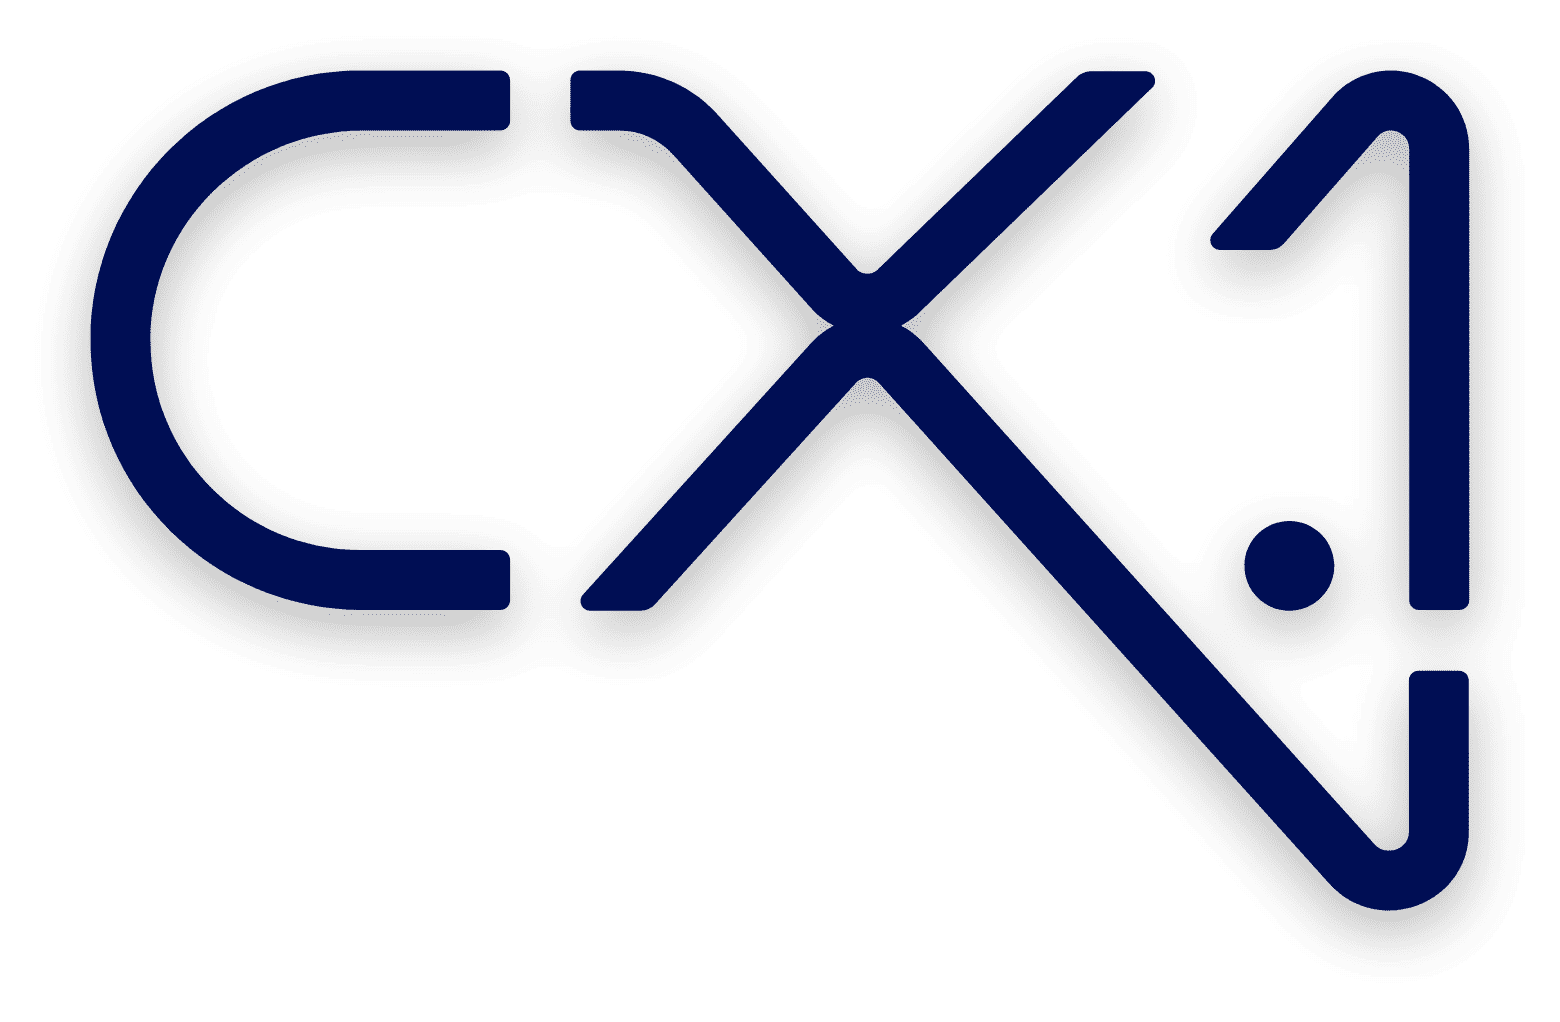 cx-1 logo